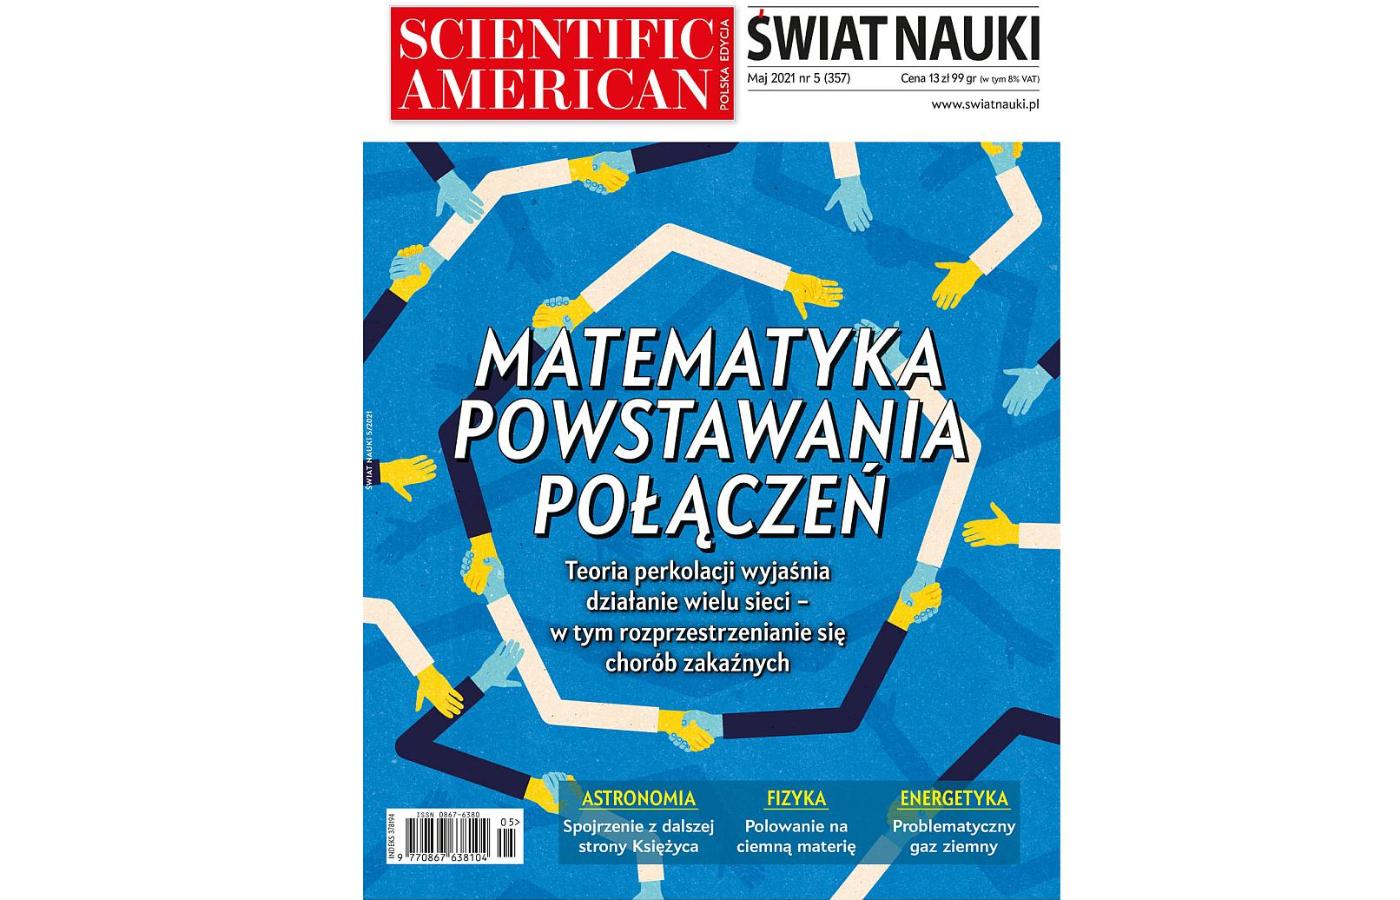 Już od maja wydawcą miesięcznika „Świat Nauki” będzie POLITYKA.